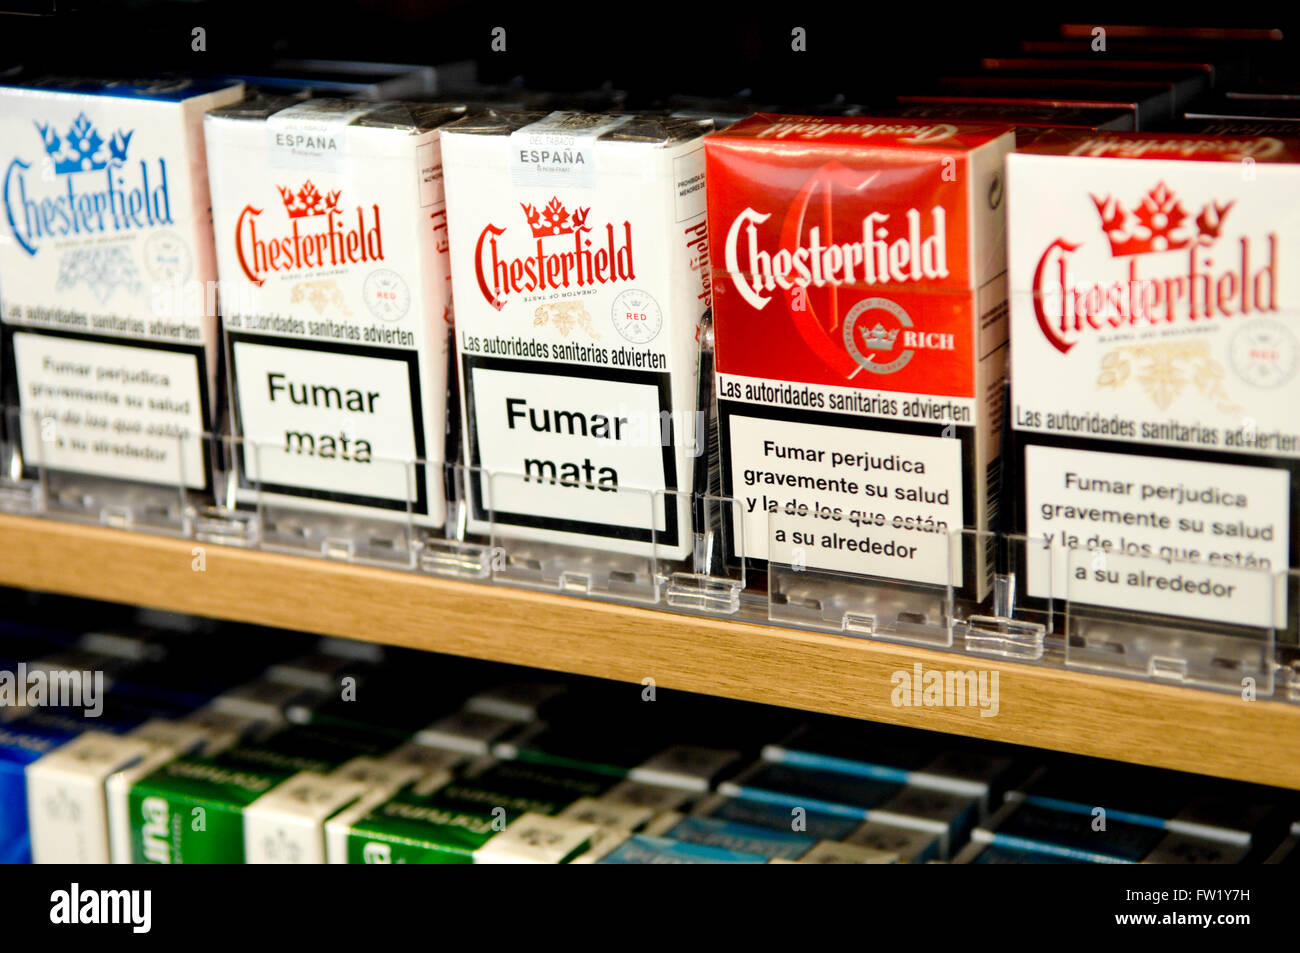 Sélection de Cigarettes Chesterfield une marque appartenant à la Philip Morris Companies Incorporated en vente dans un bureau de tabac. Banque D'Images